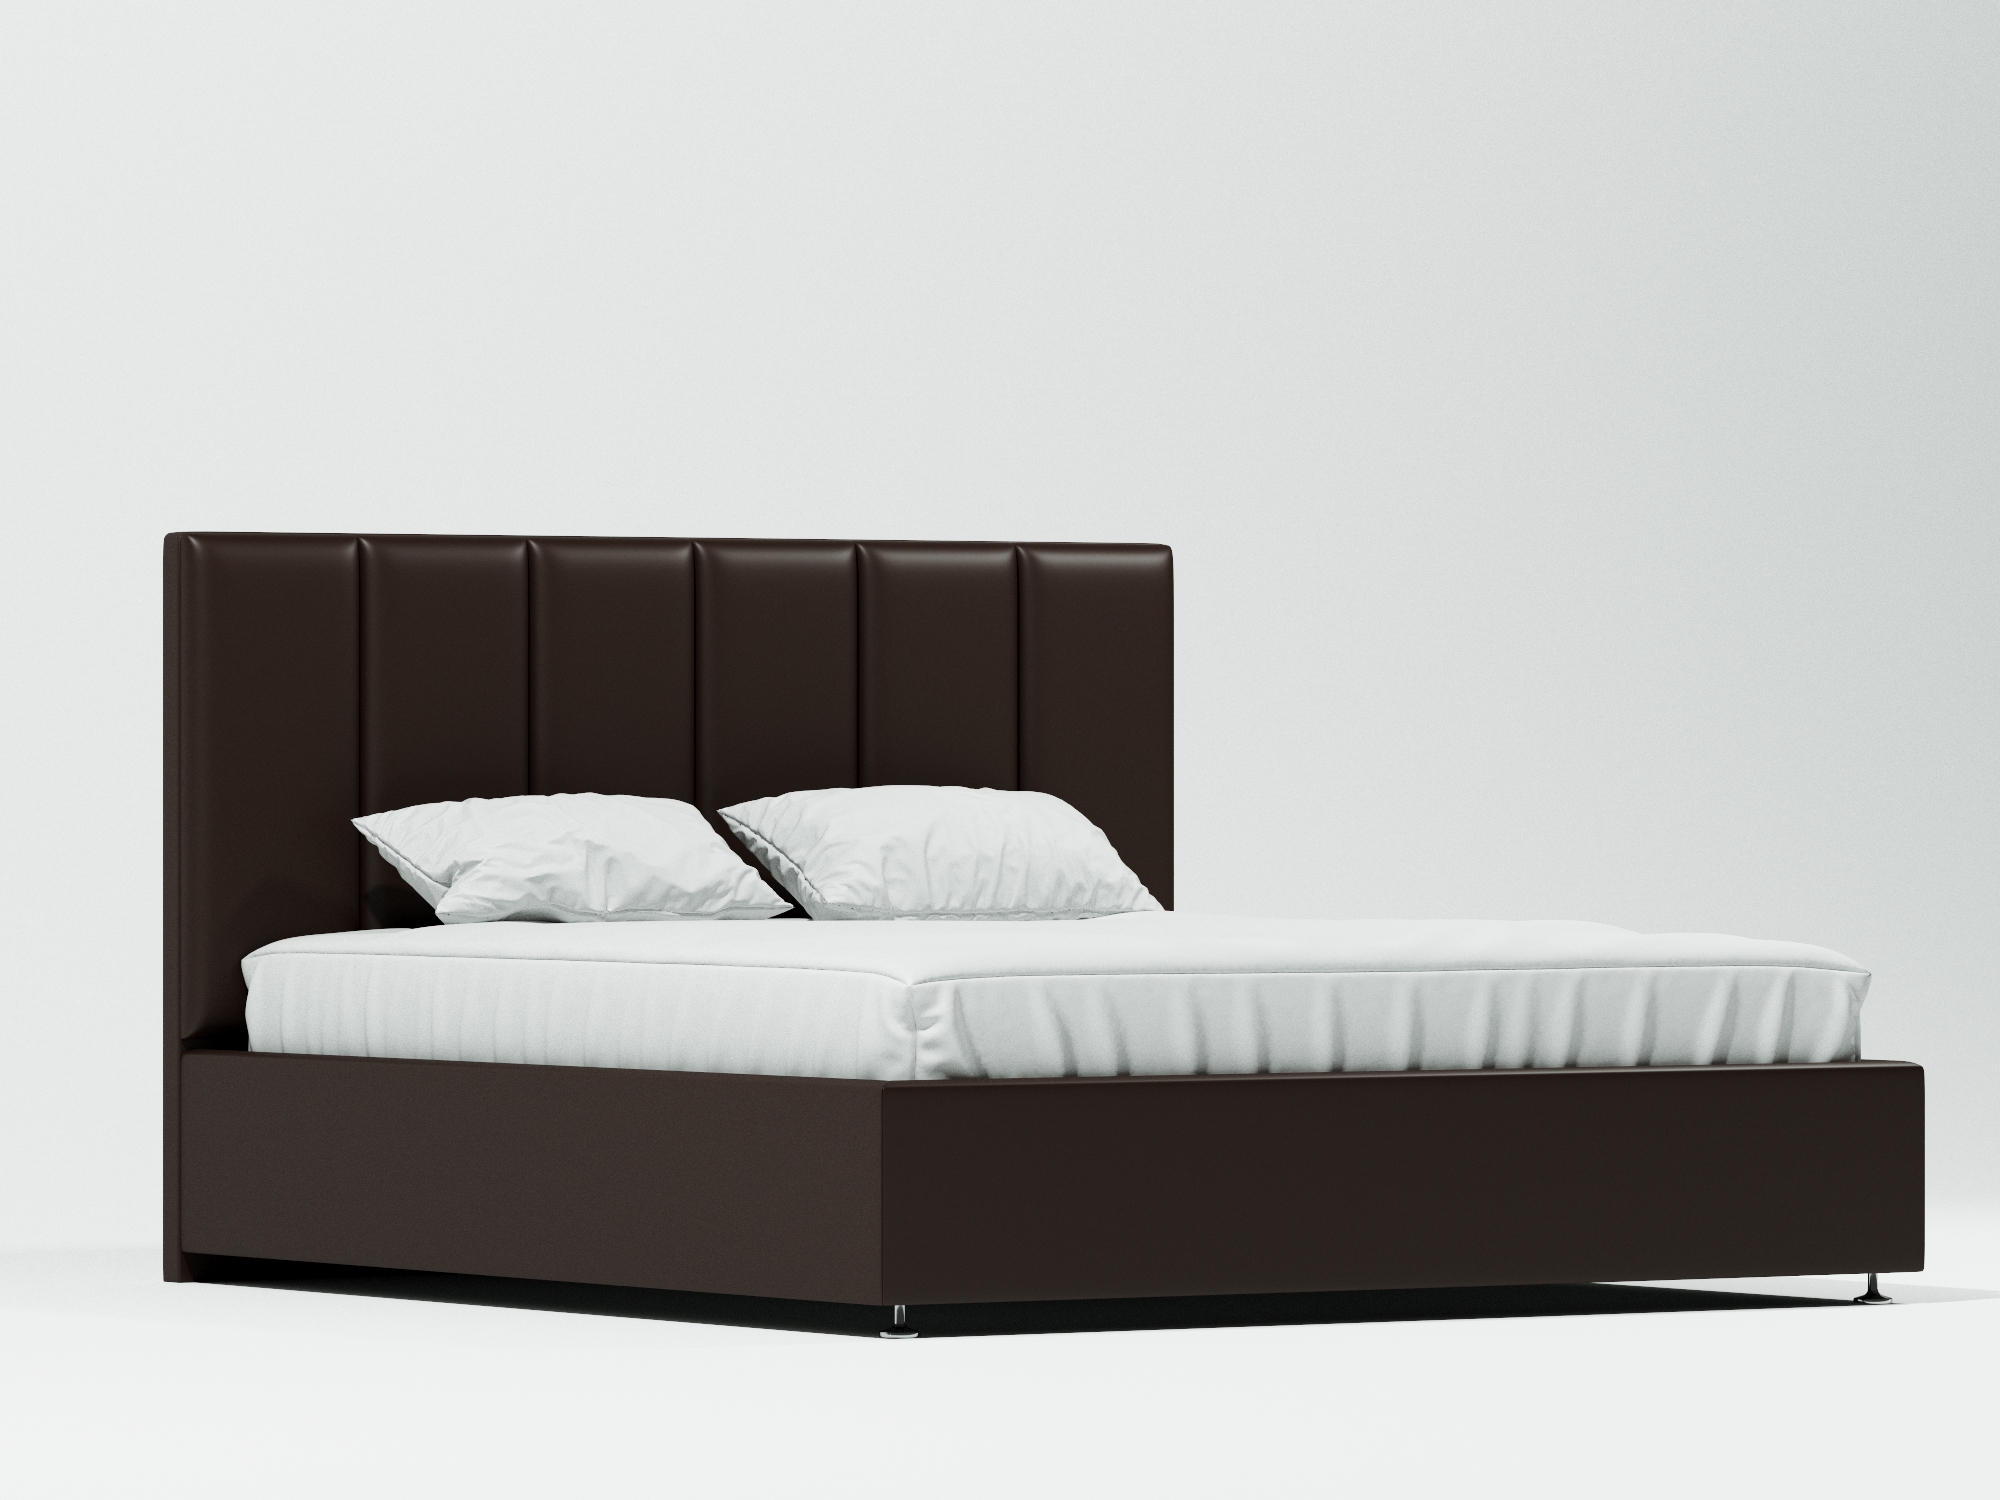 Кровать Терзо Плюс (160х200) Венге, ДСП, МДФ кровать николь 160х200 бетон графит бежевый коричневый темный мдф лдсп